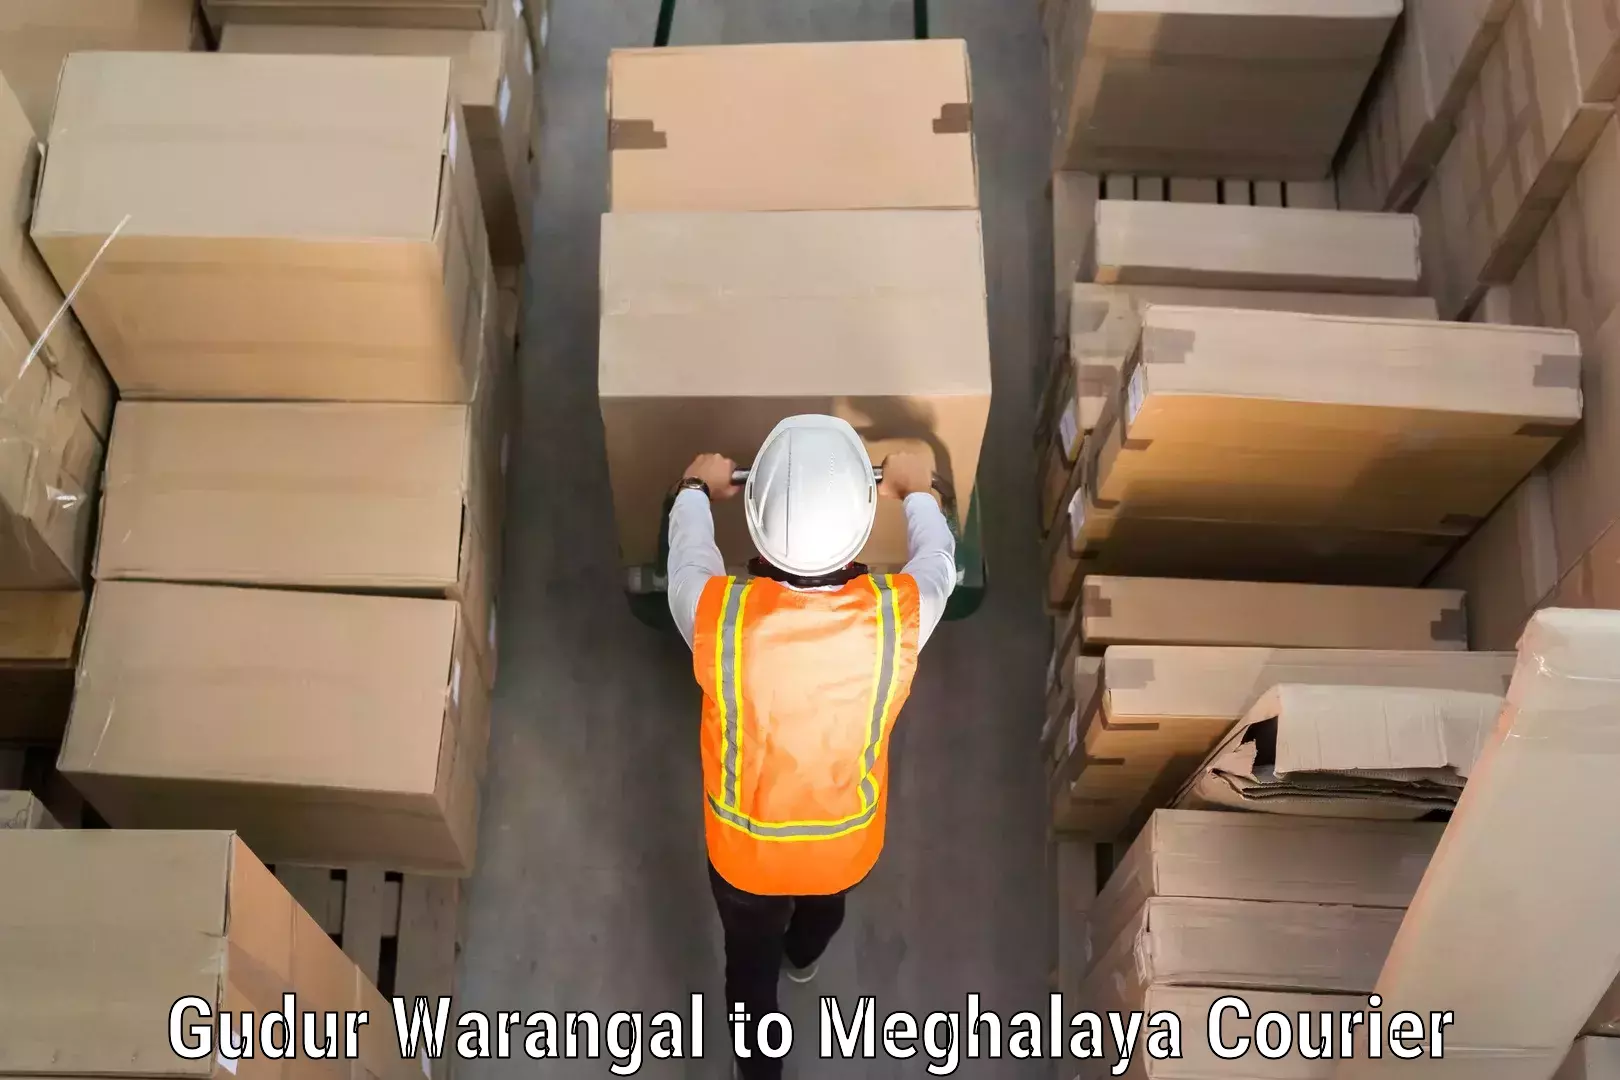 Luggage transport service Gudur Warangal to Meghalaya